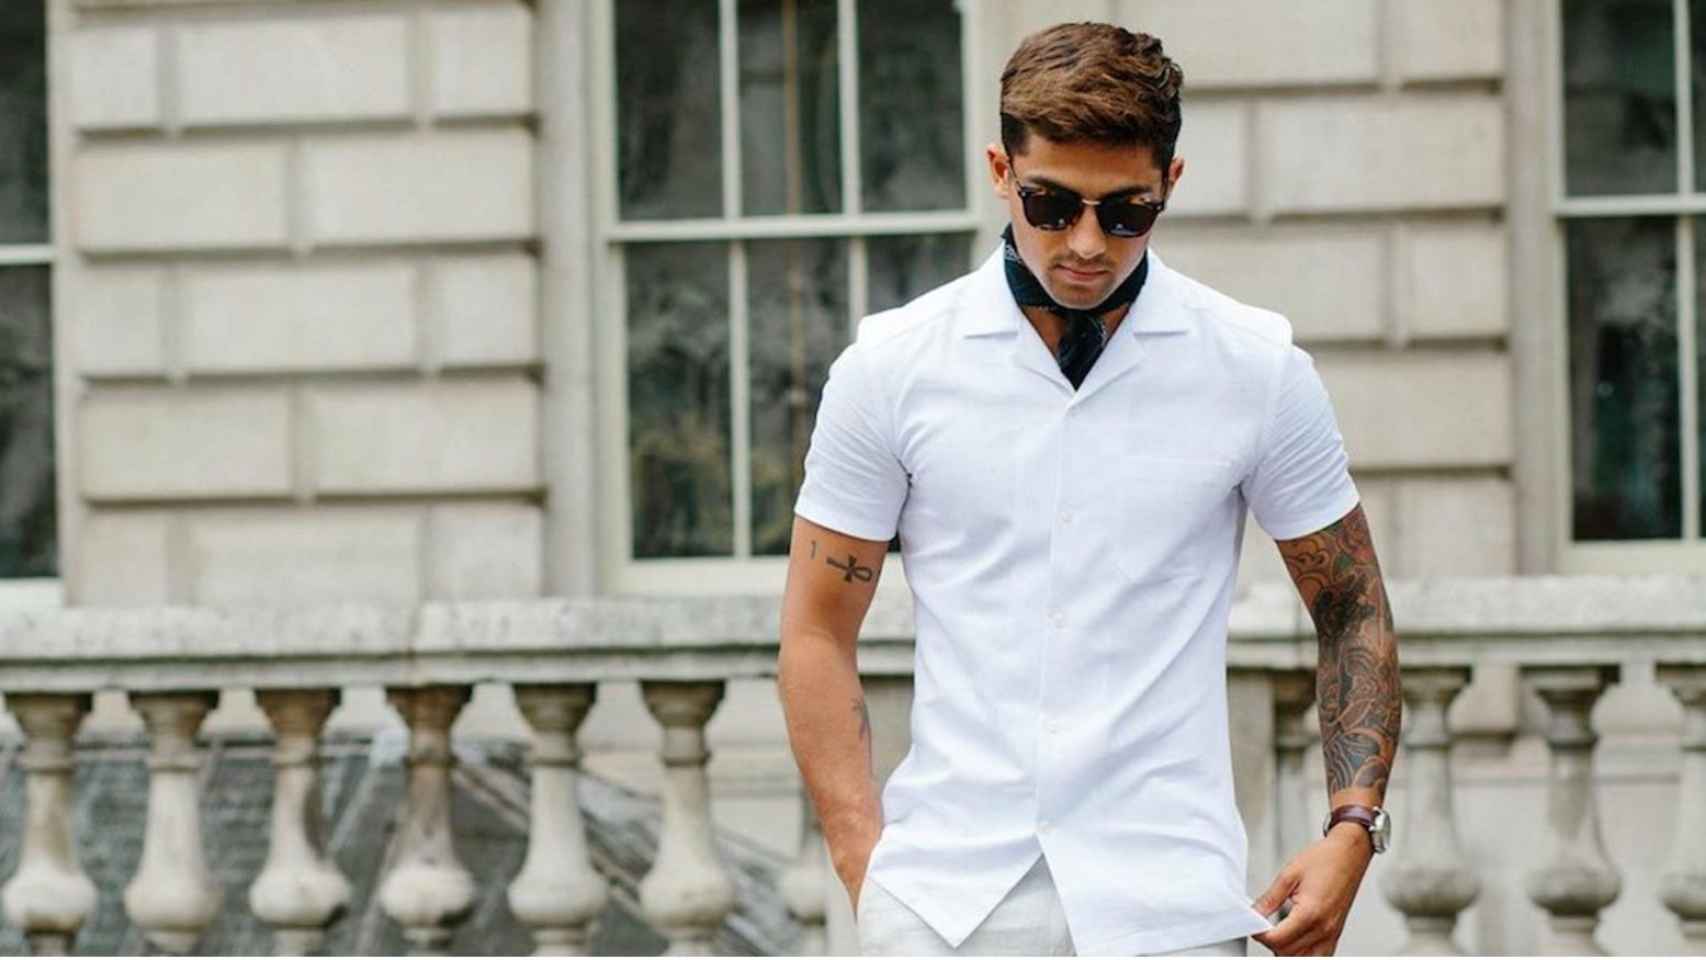  n/a Camisa blanca para hombre, camisas de lino de